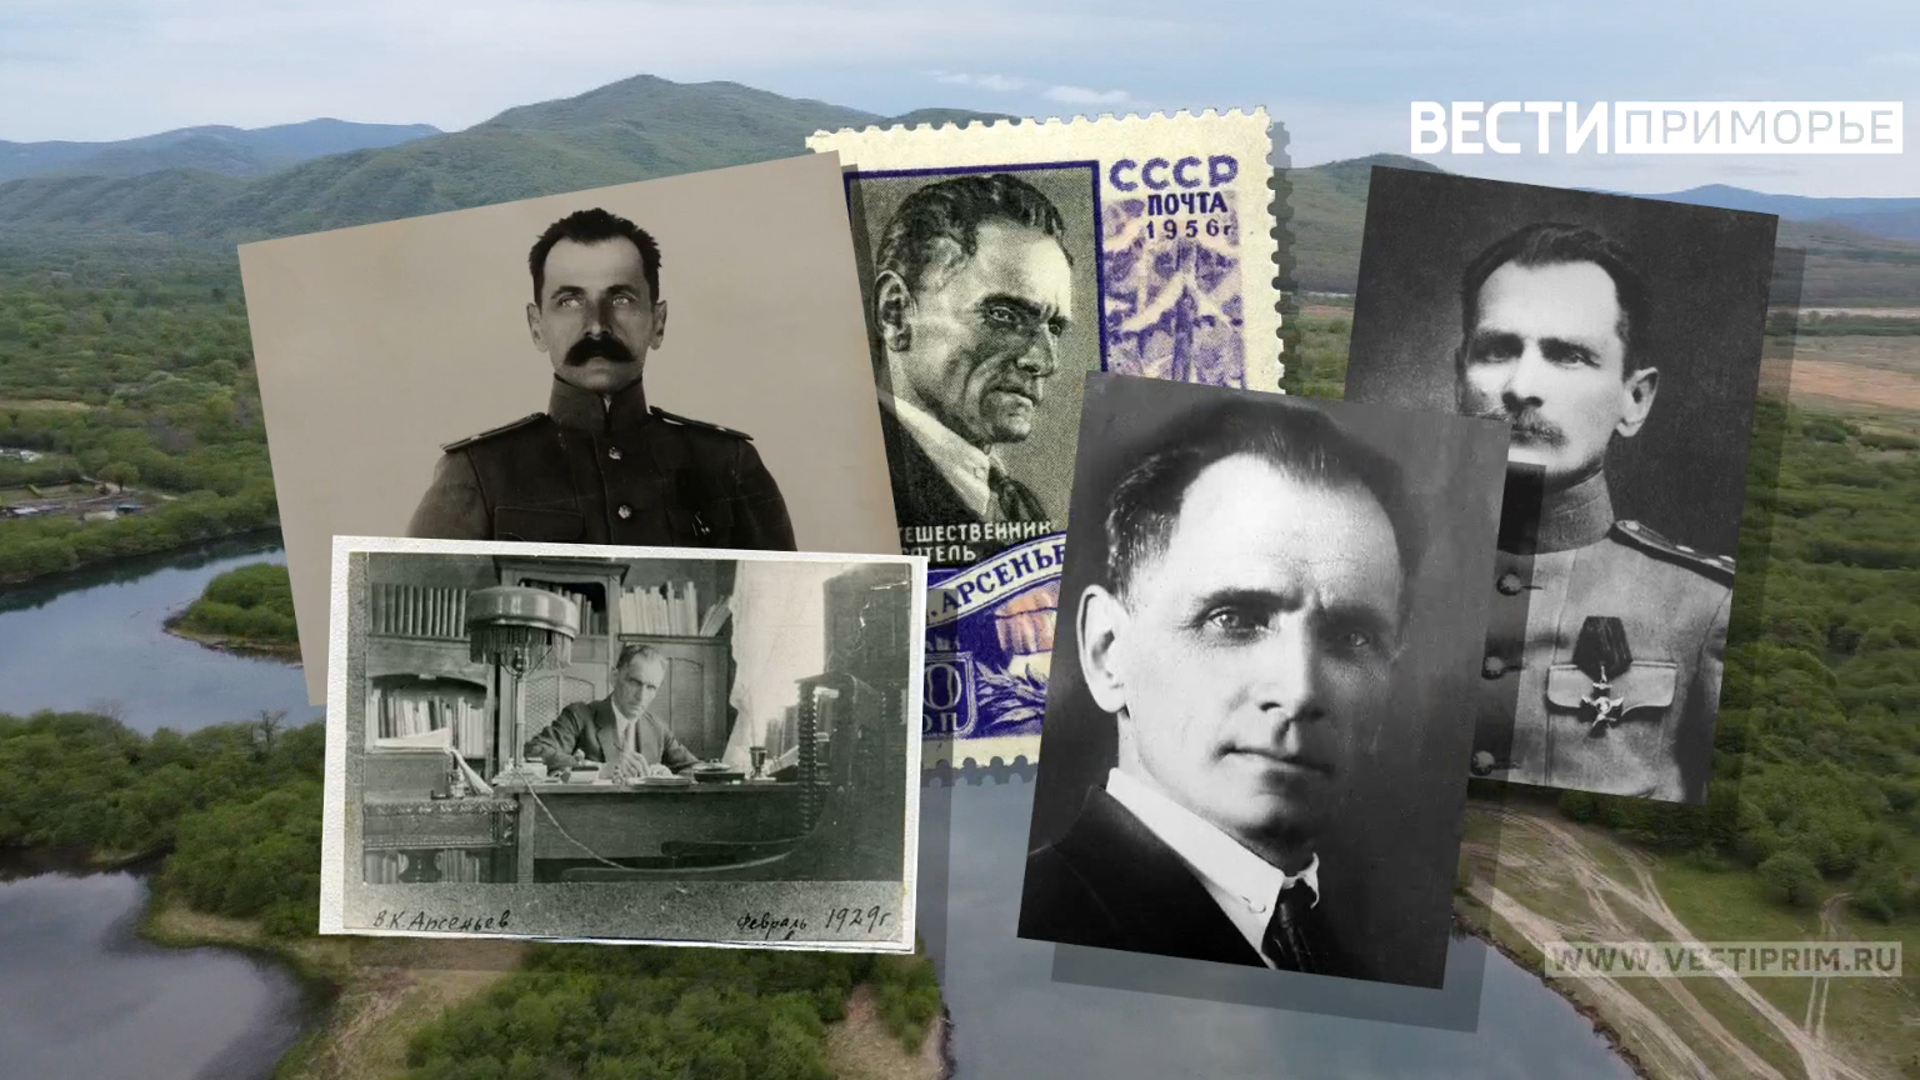 “滨海边疆区当地历史的教训”：一部献给弗拉基米尔·阿尔谢涅夫 (Vladimir Arseniev) 周年纪念的电影